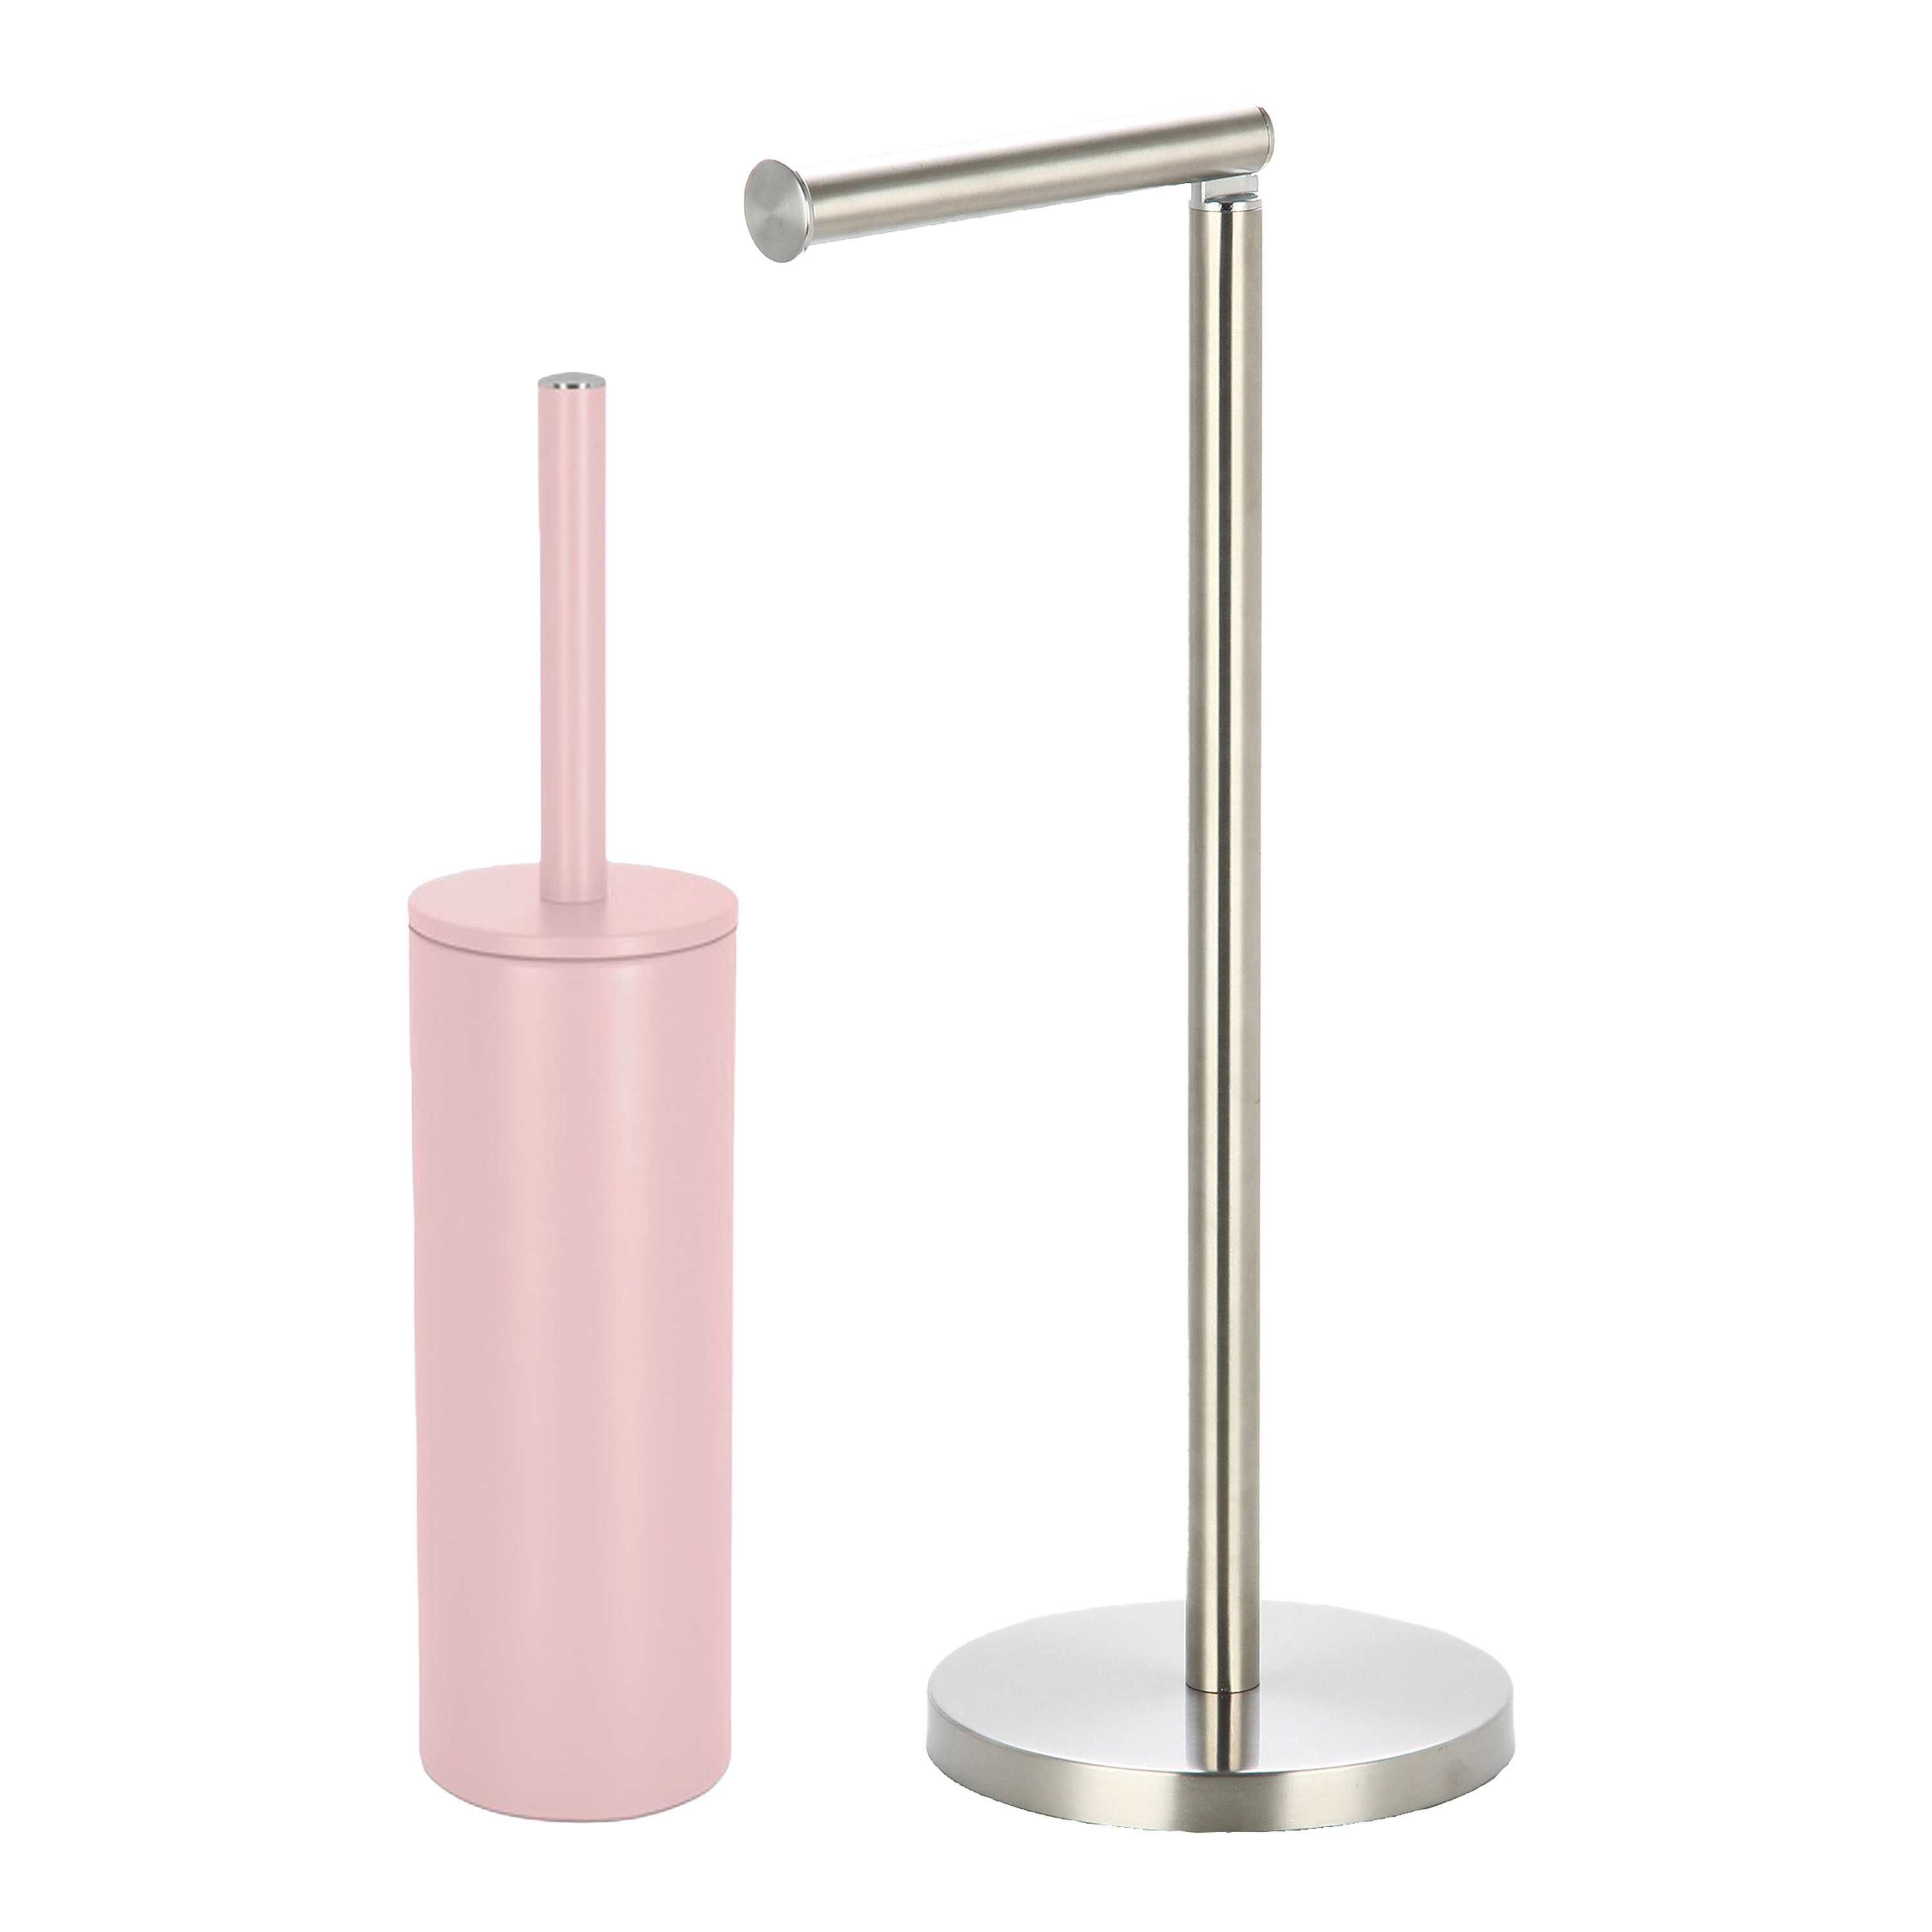 Spirella Badkamer accessoires set - WC-borstel/toiletrollen houder - metaal - lichtroze/zilver - Luxe uitstraling